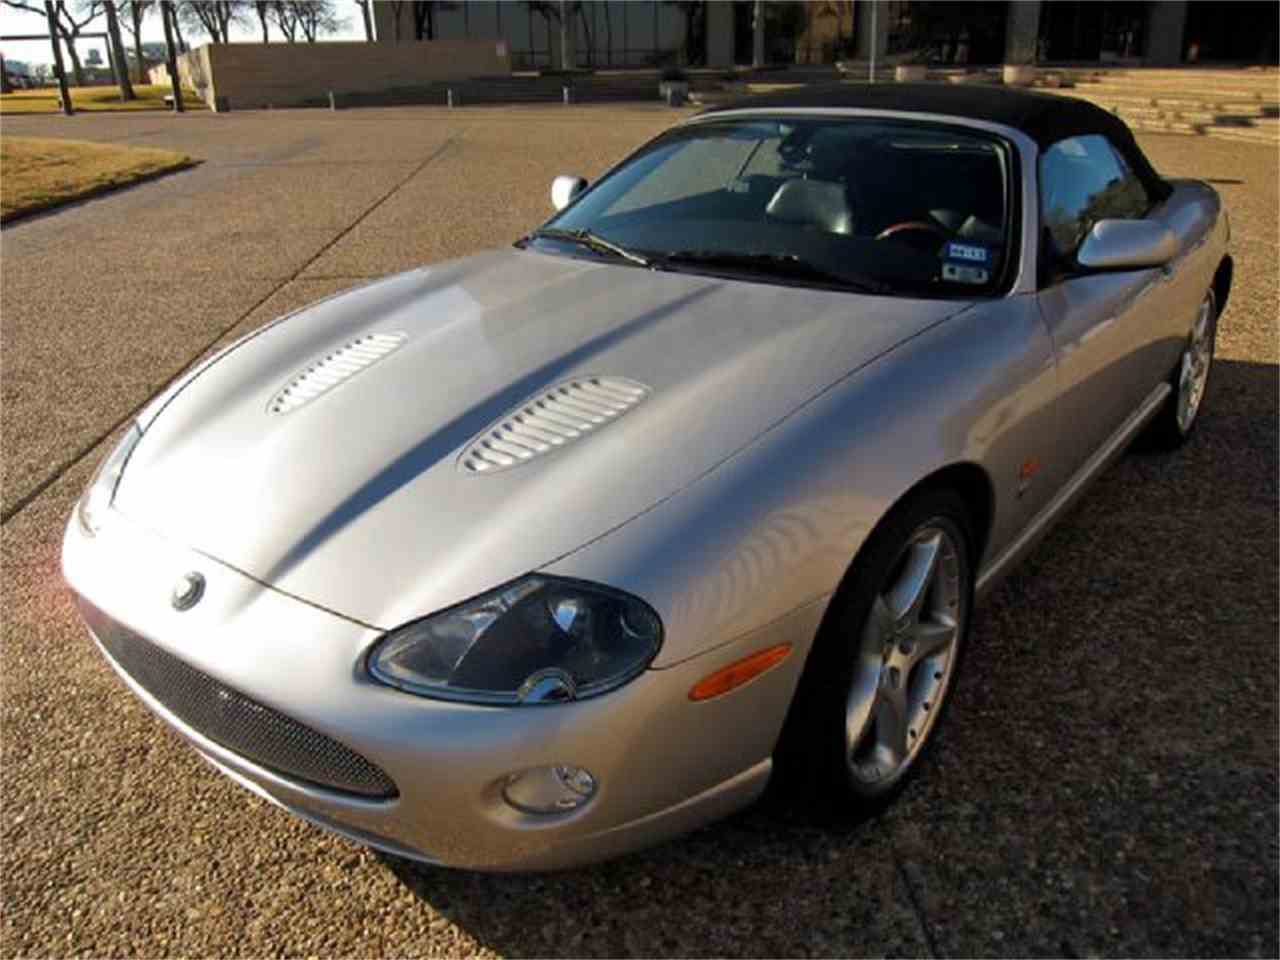 2006 Jaguar XKR for Sale | ClassicCars.com | CC-843952